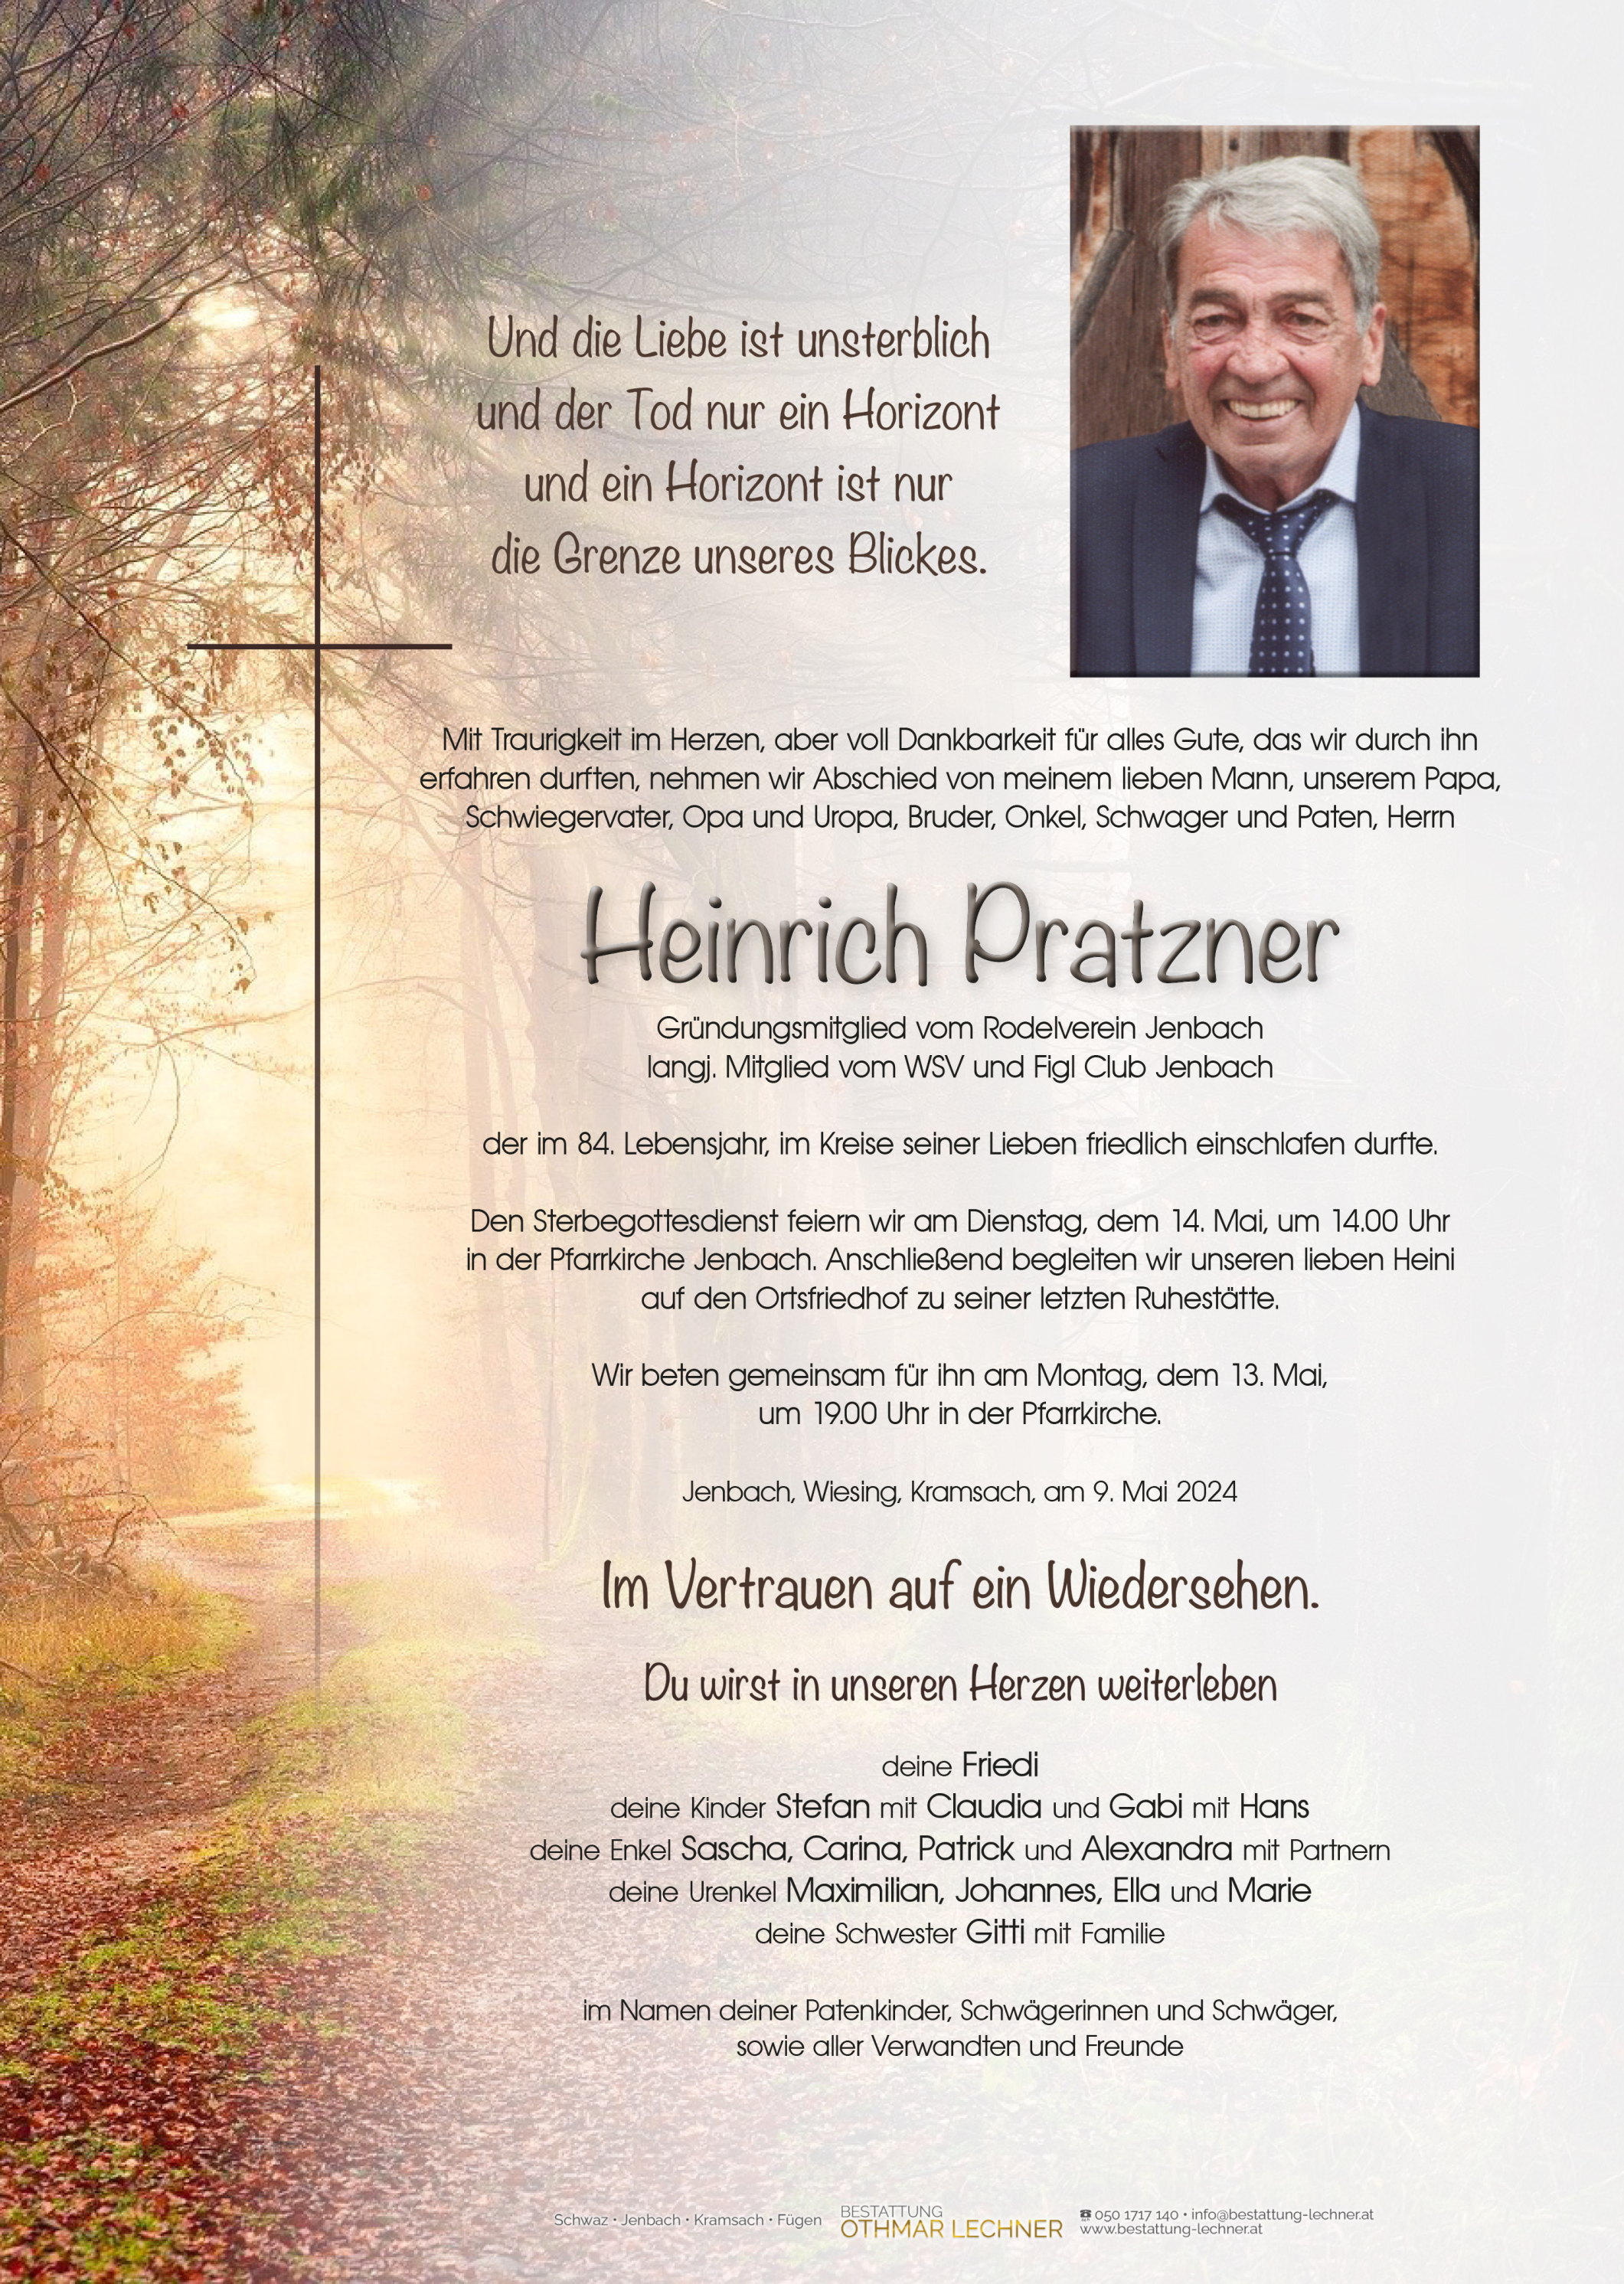 Heinrich Pratzner